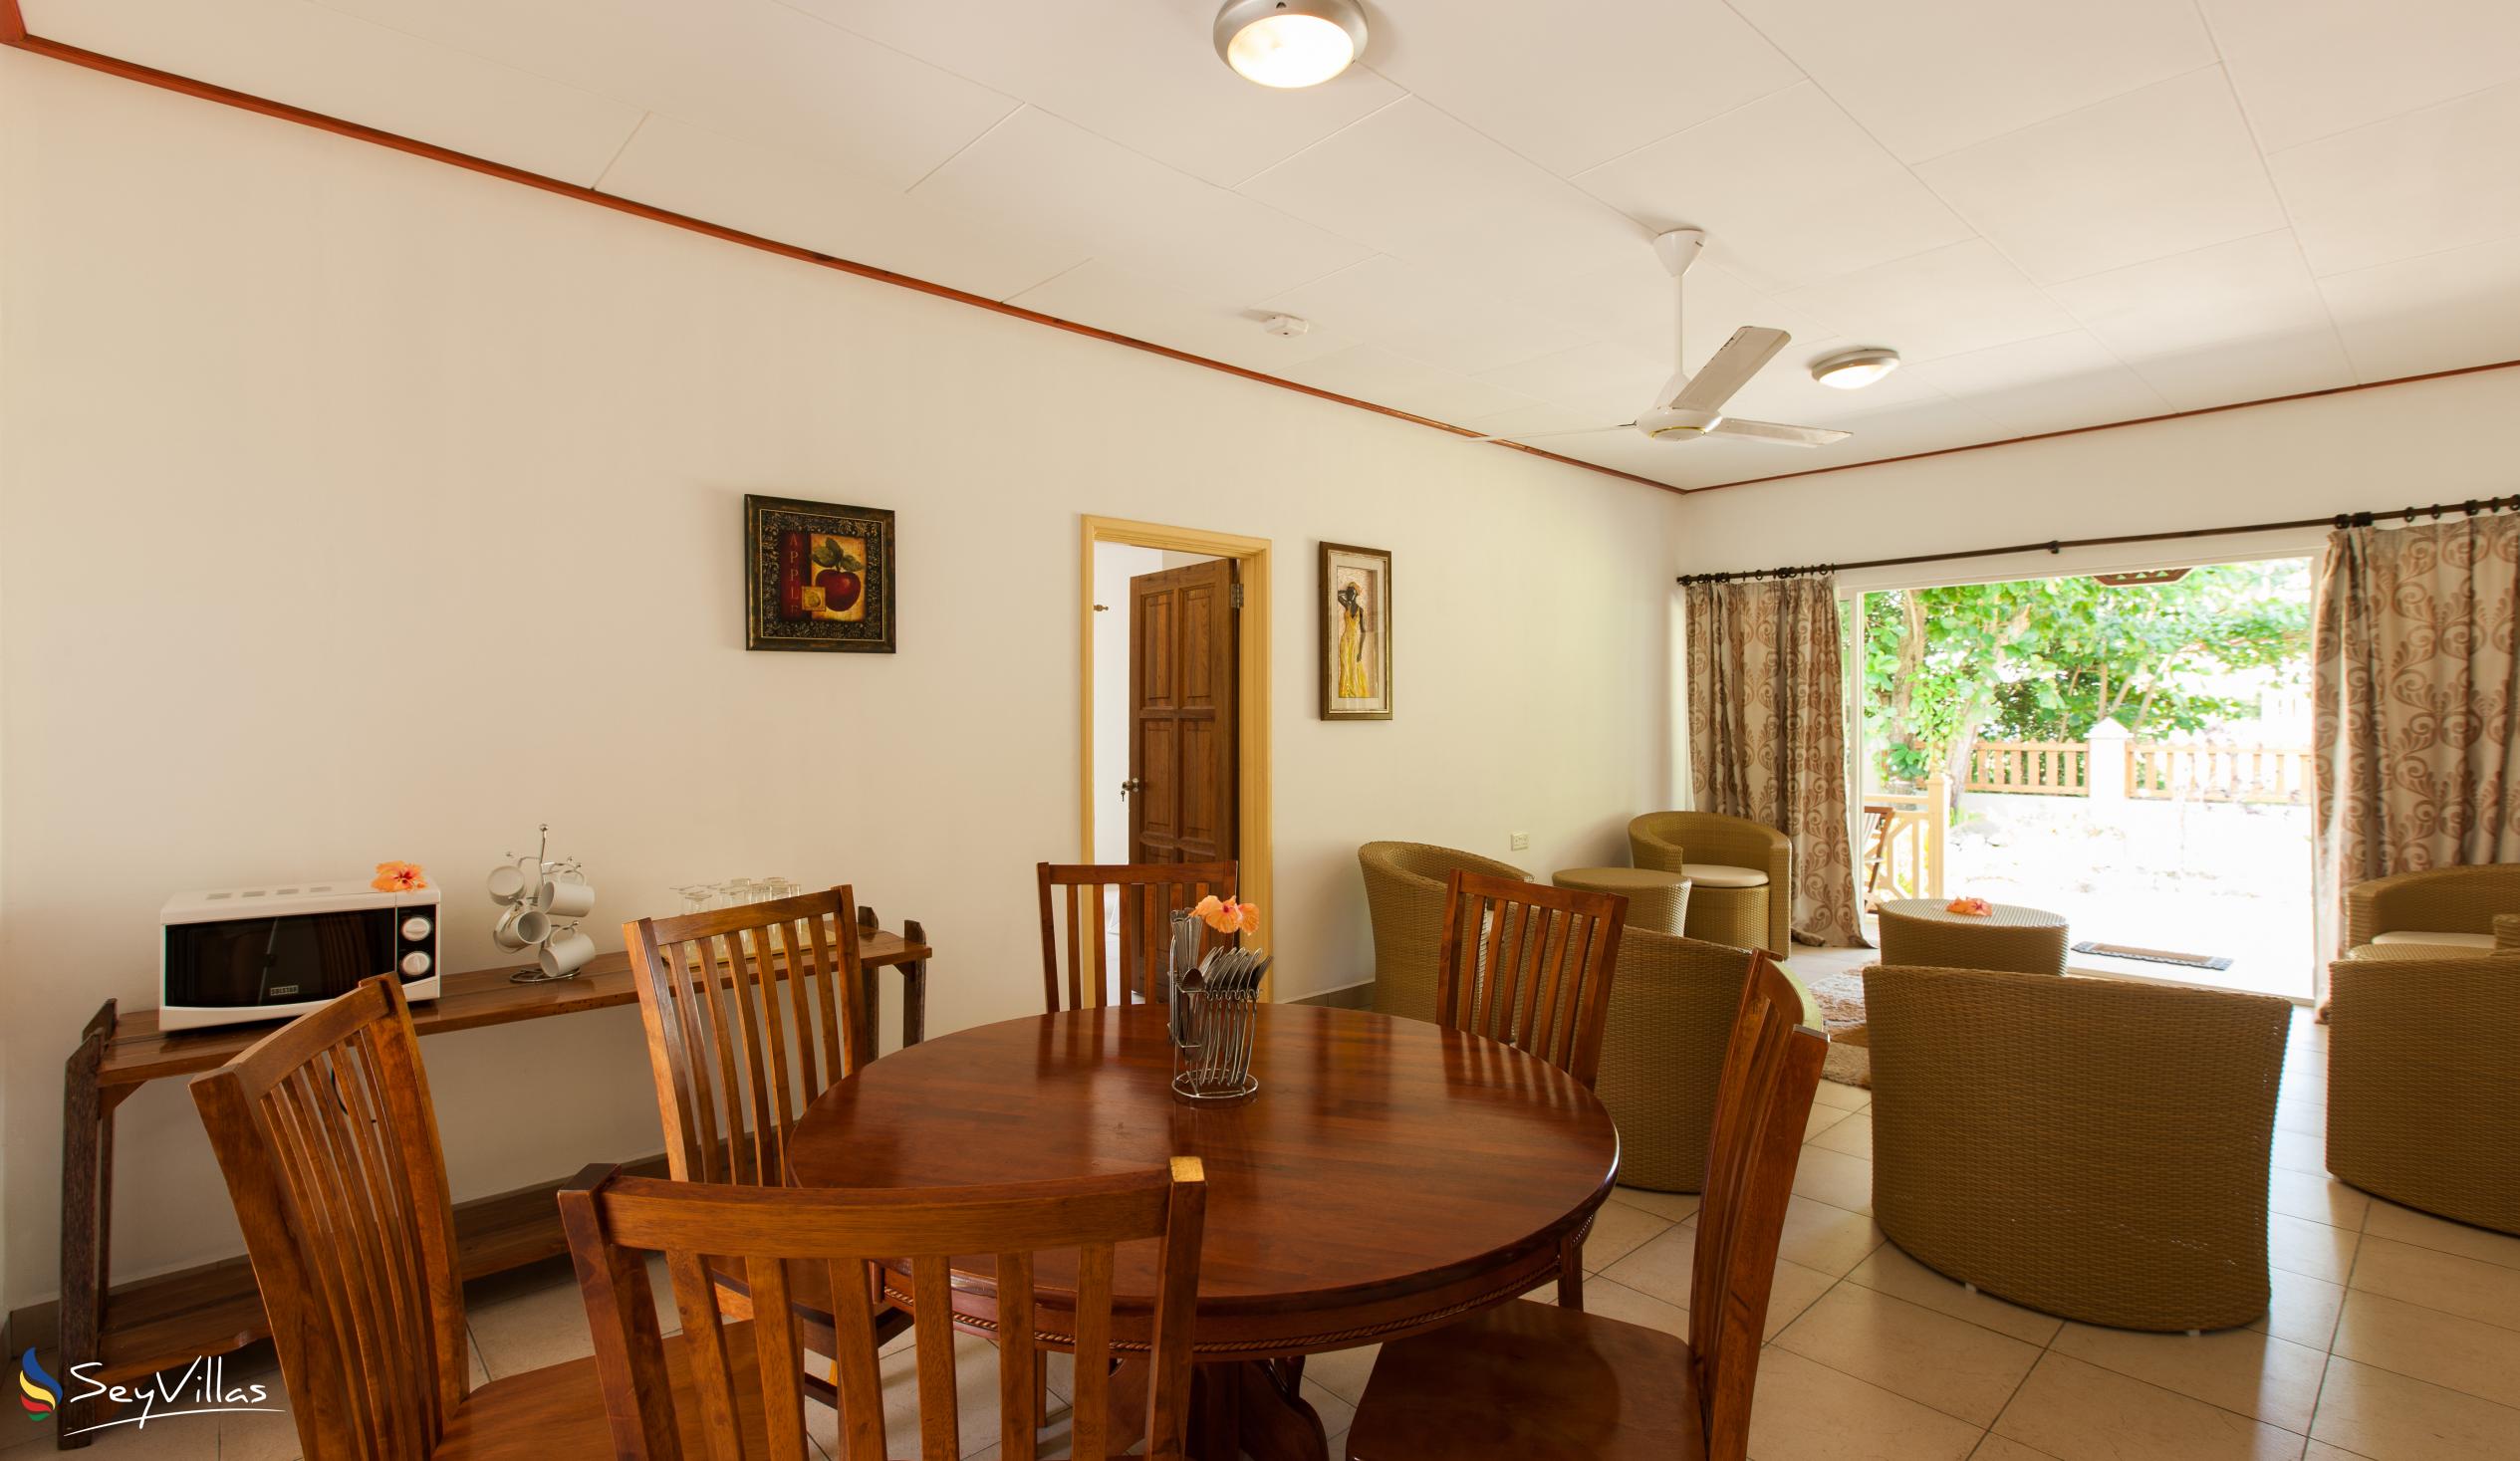 Foto 8: Hostellerie La Digue - Chalet mit 3 Schlafzimmern - La Digue (Seychellen)